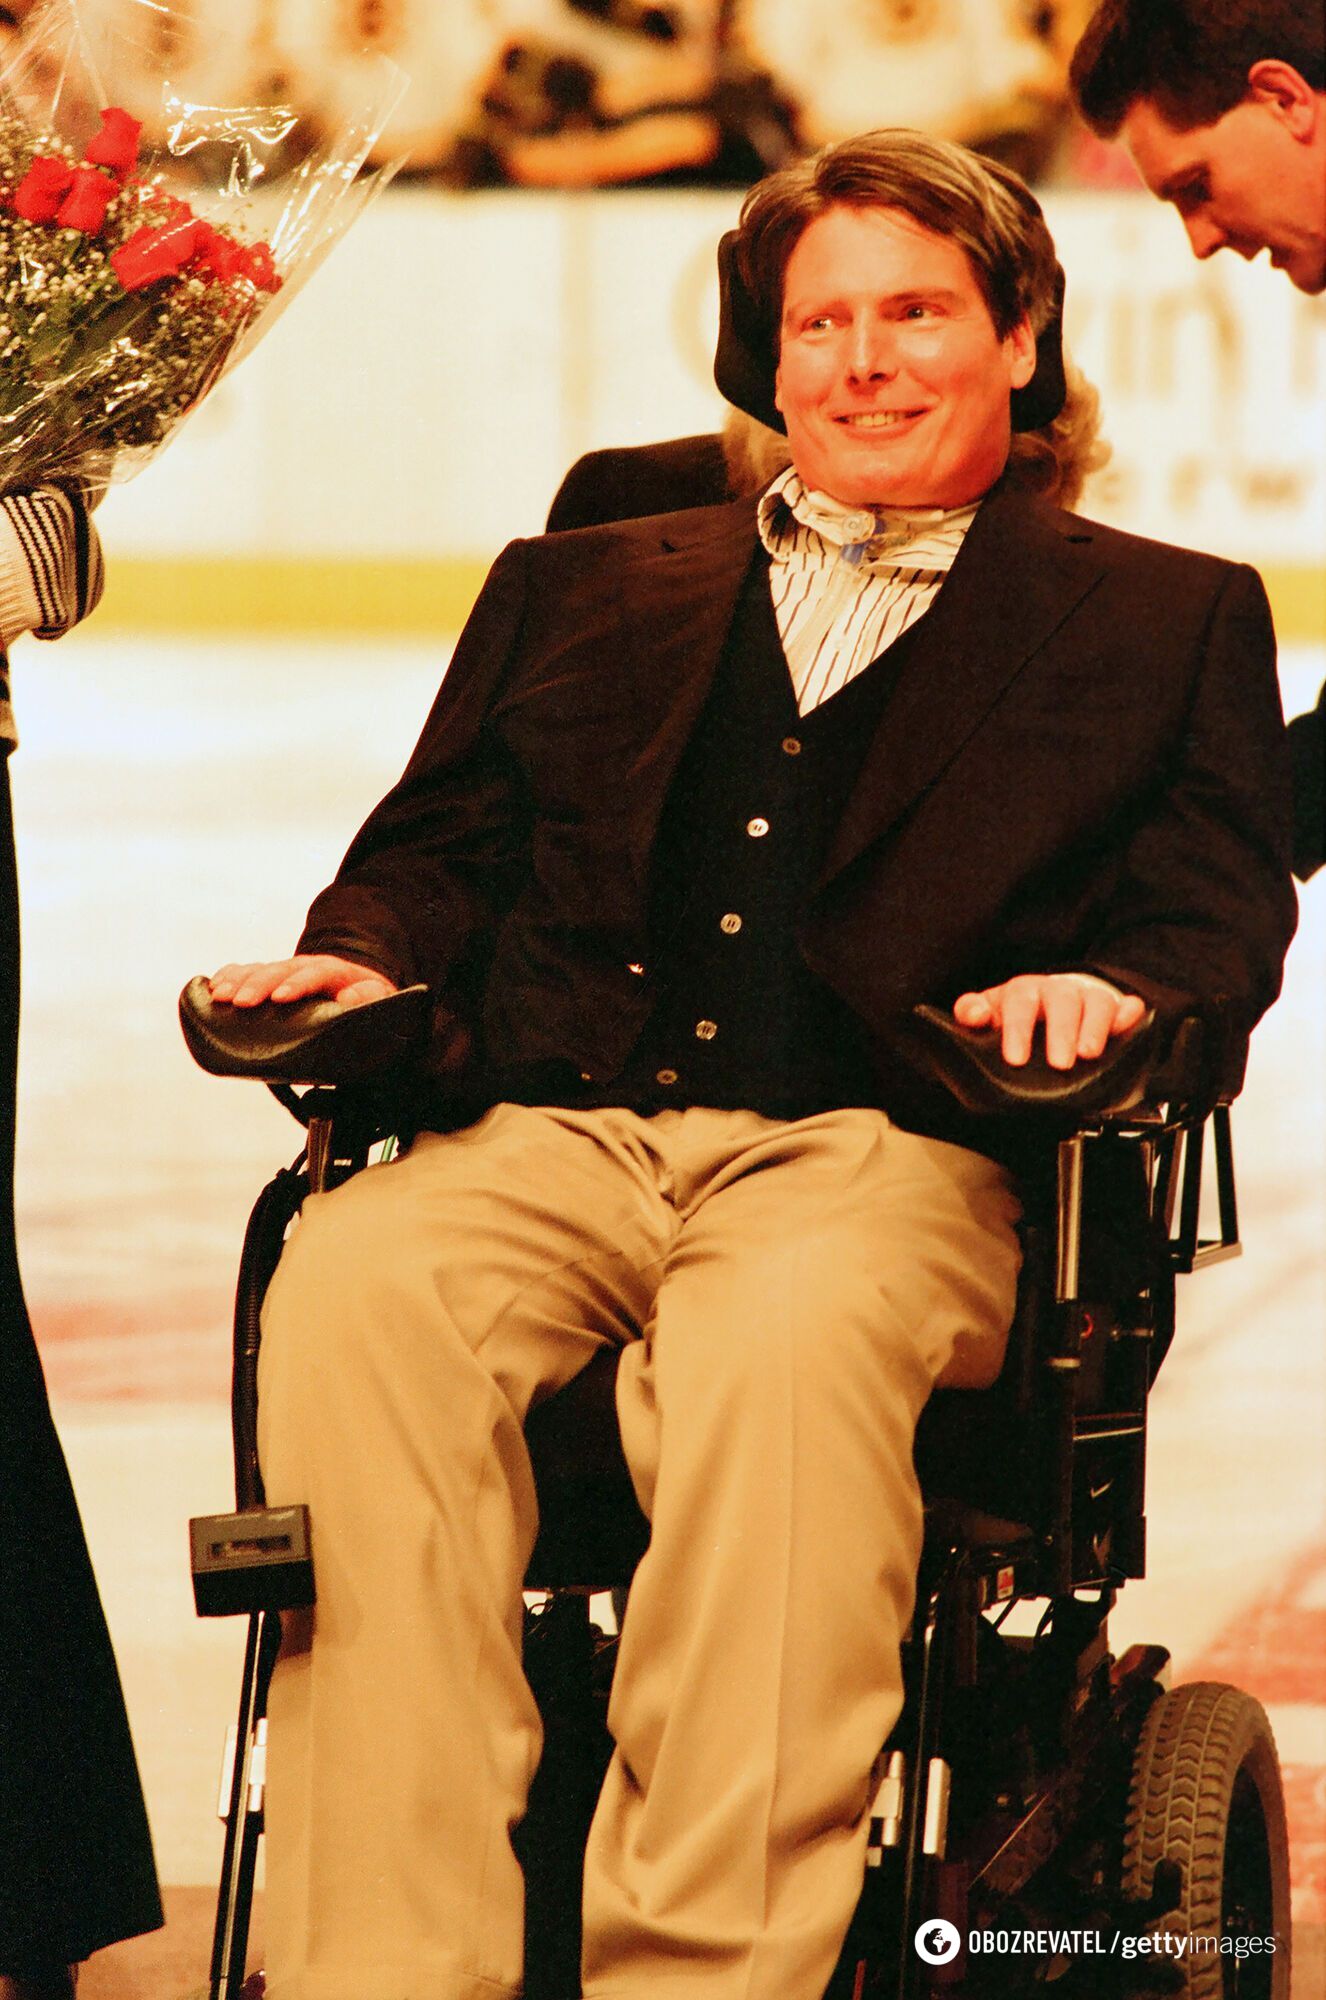 Był Supermanem, ale skończył na wózku inwalidzkim: tragiczna historia życia Christophera Reeve'a, który pozostał nadludzki przez to wszystko